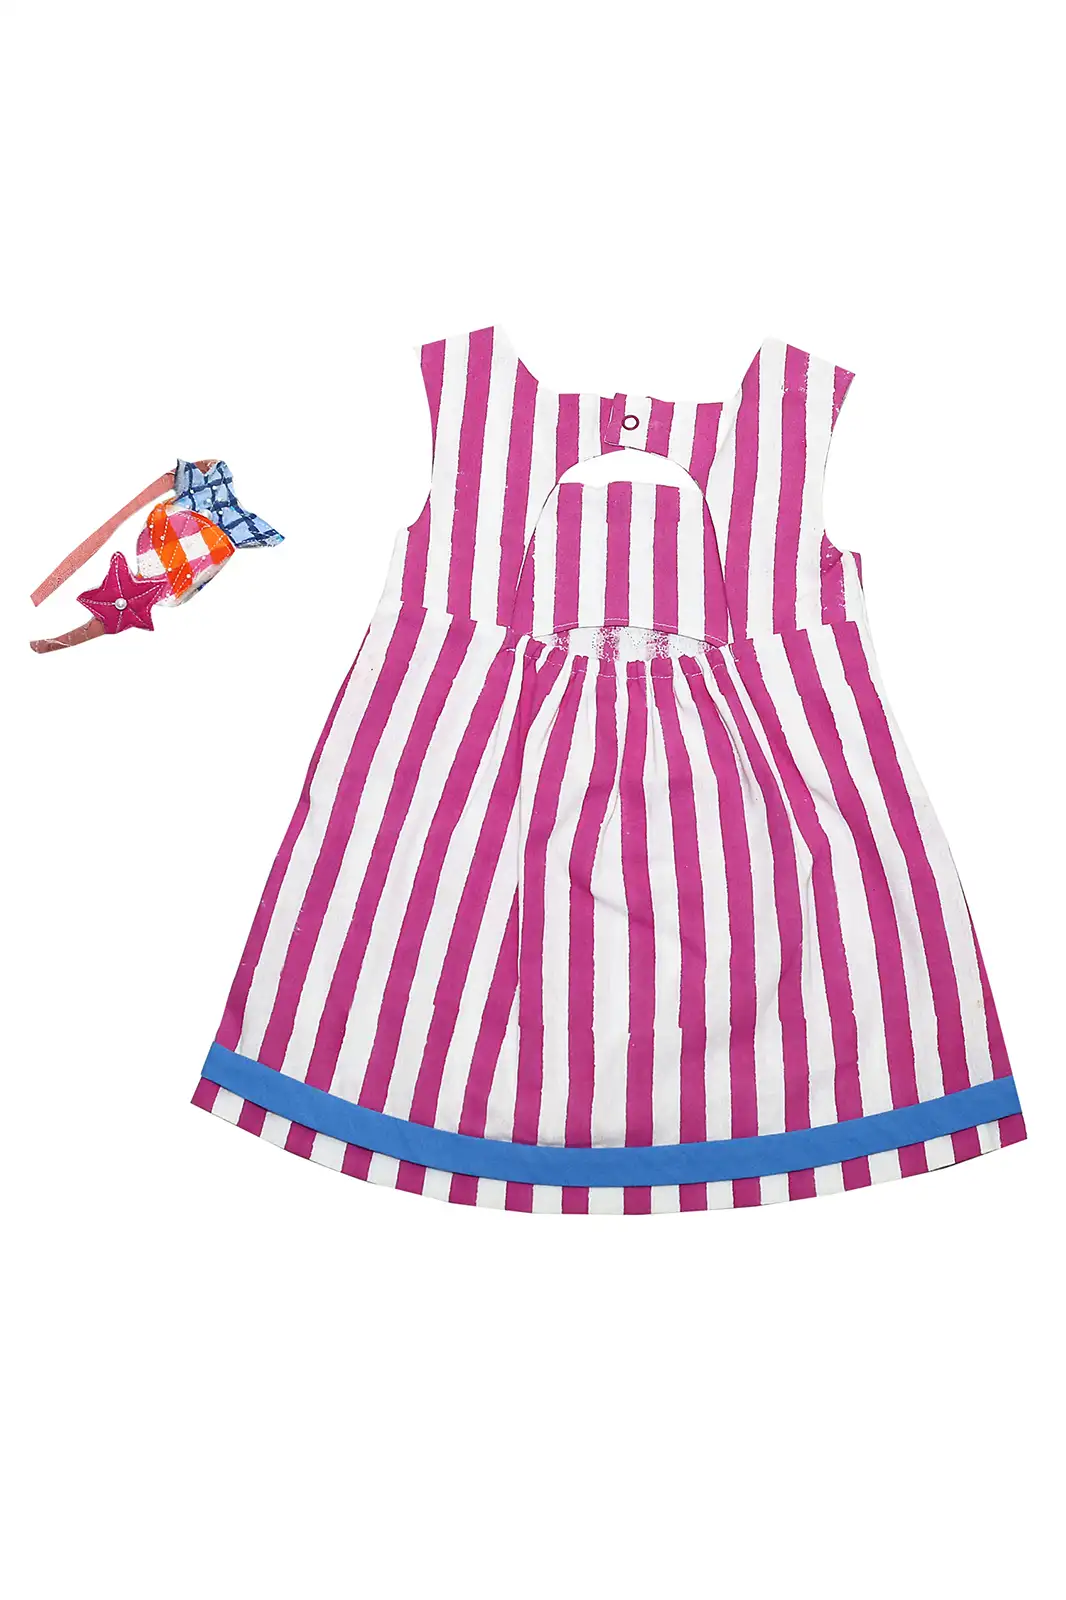 pinky fish patch work dress for girl, princess dresses for girls, christmas dresses for girls, party wear dress, color block dress, princess pink dress